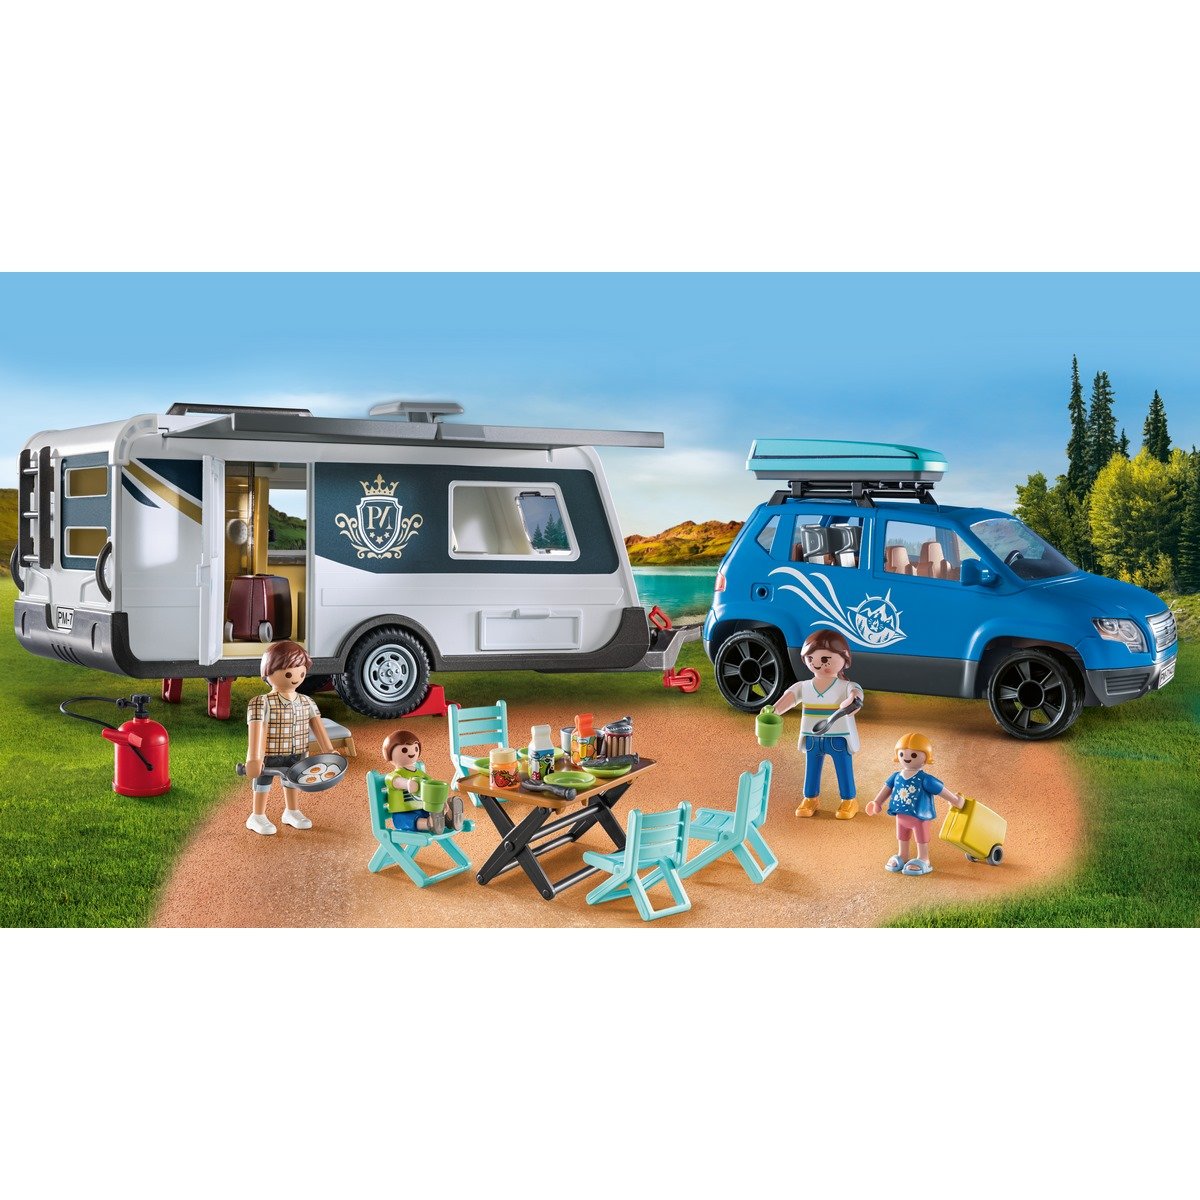 Playmobil Family Fun - Caravane de vacances